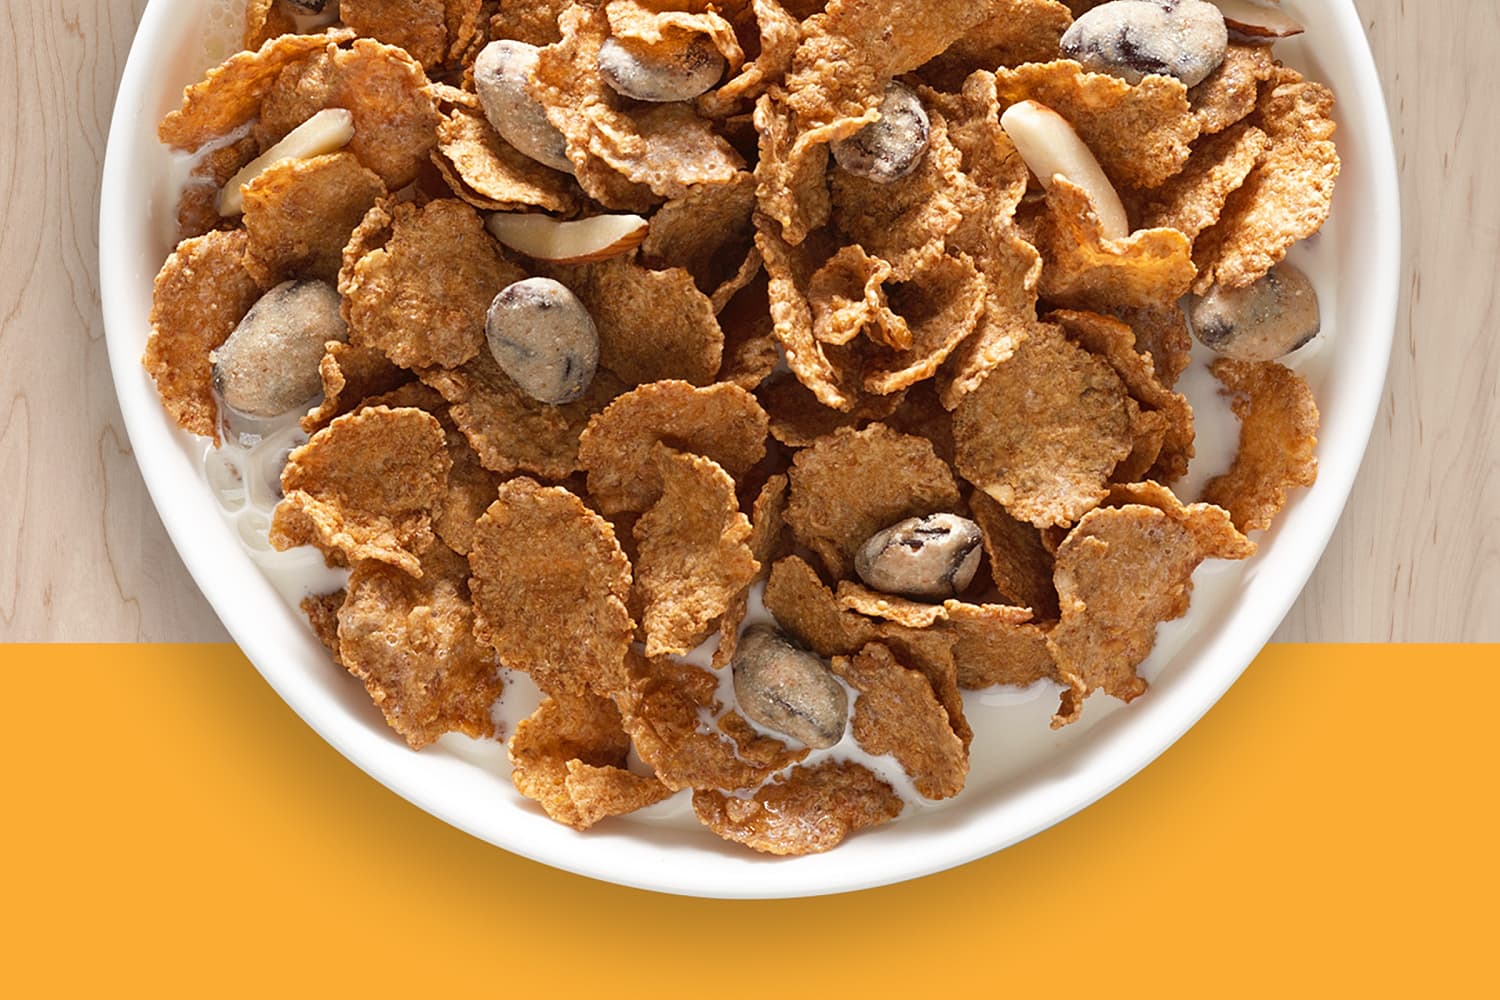 Bowl of Raisin Nut Bran cereal